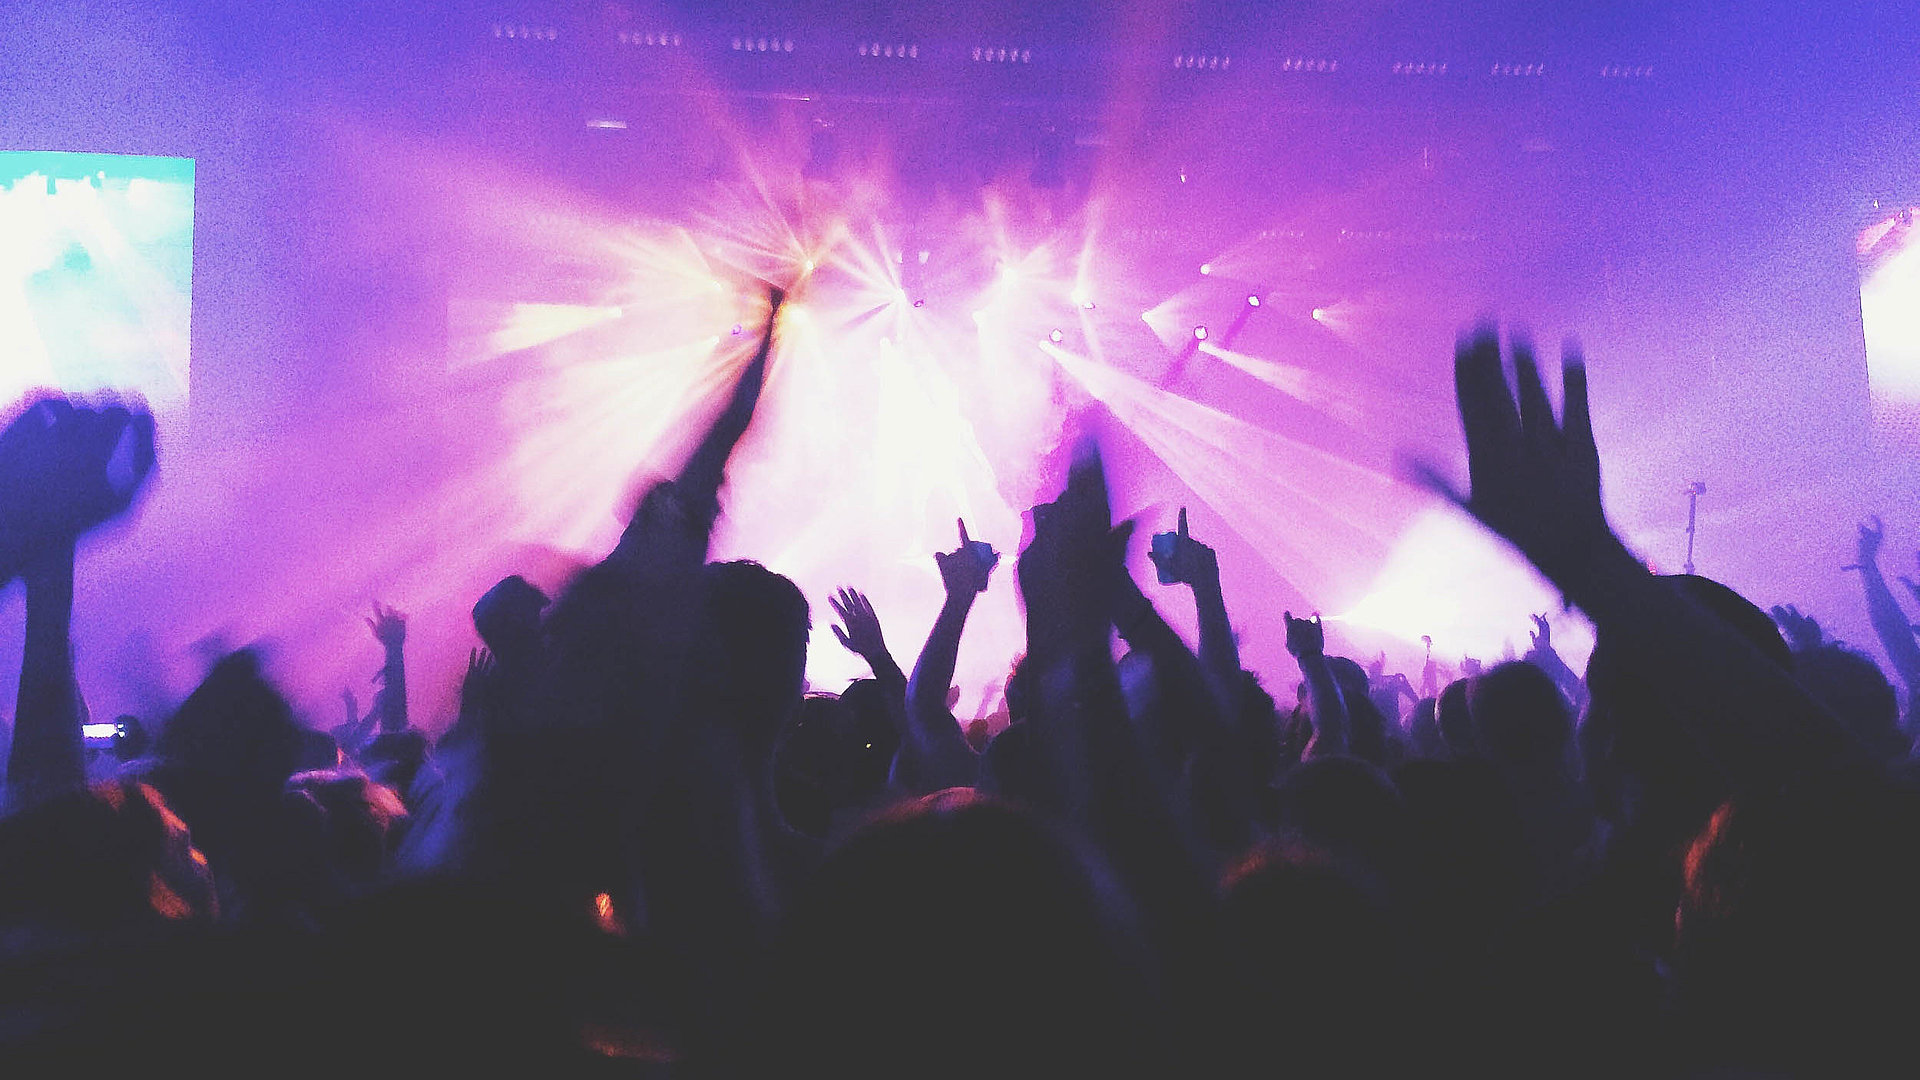 Events und Veranstaltungen in Kempten im Allgäu - in einem Club; viele Silhouetten feiern im violetten Scheinwerferlicht